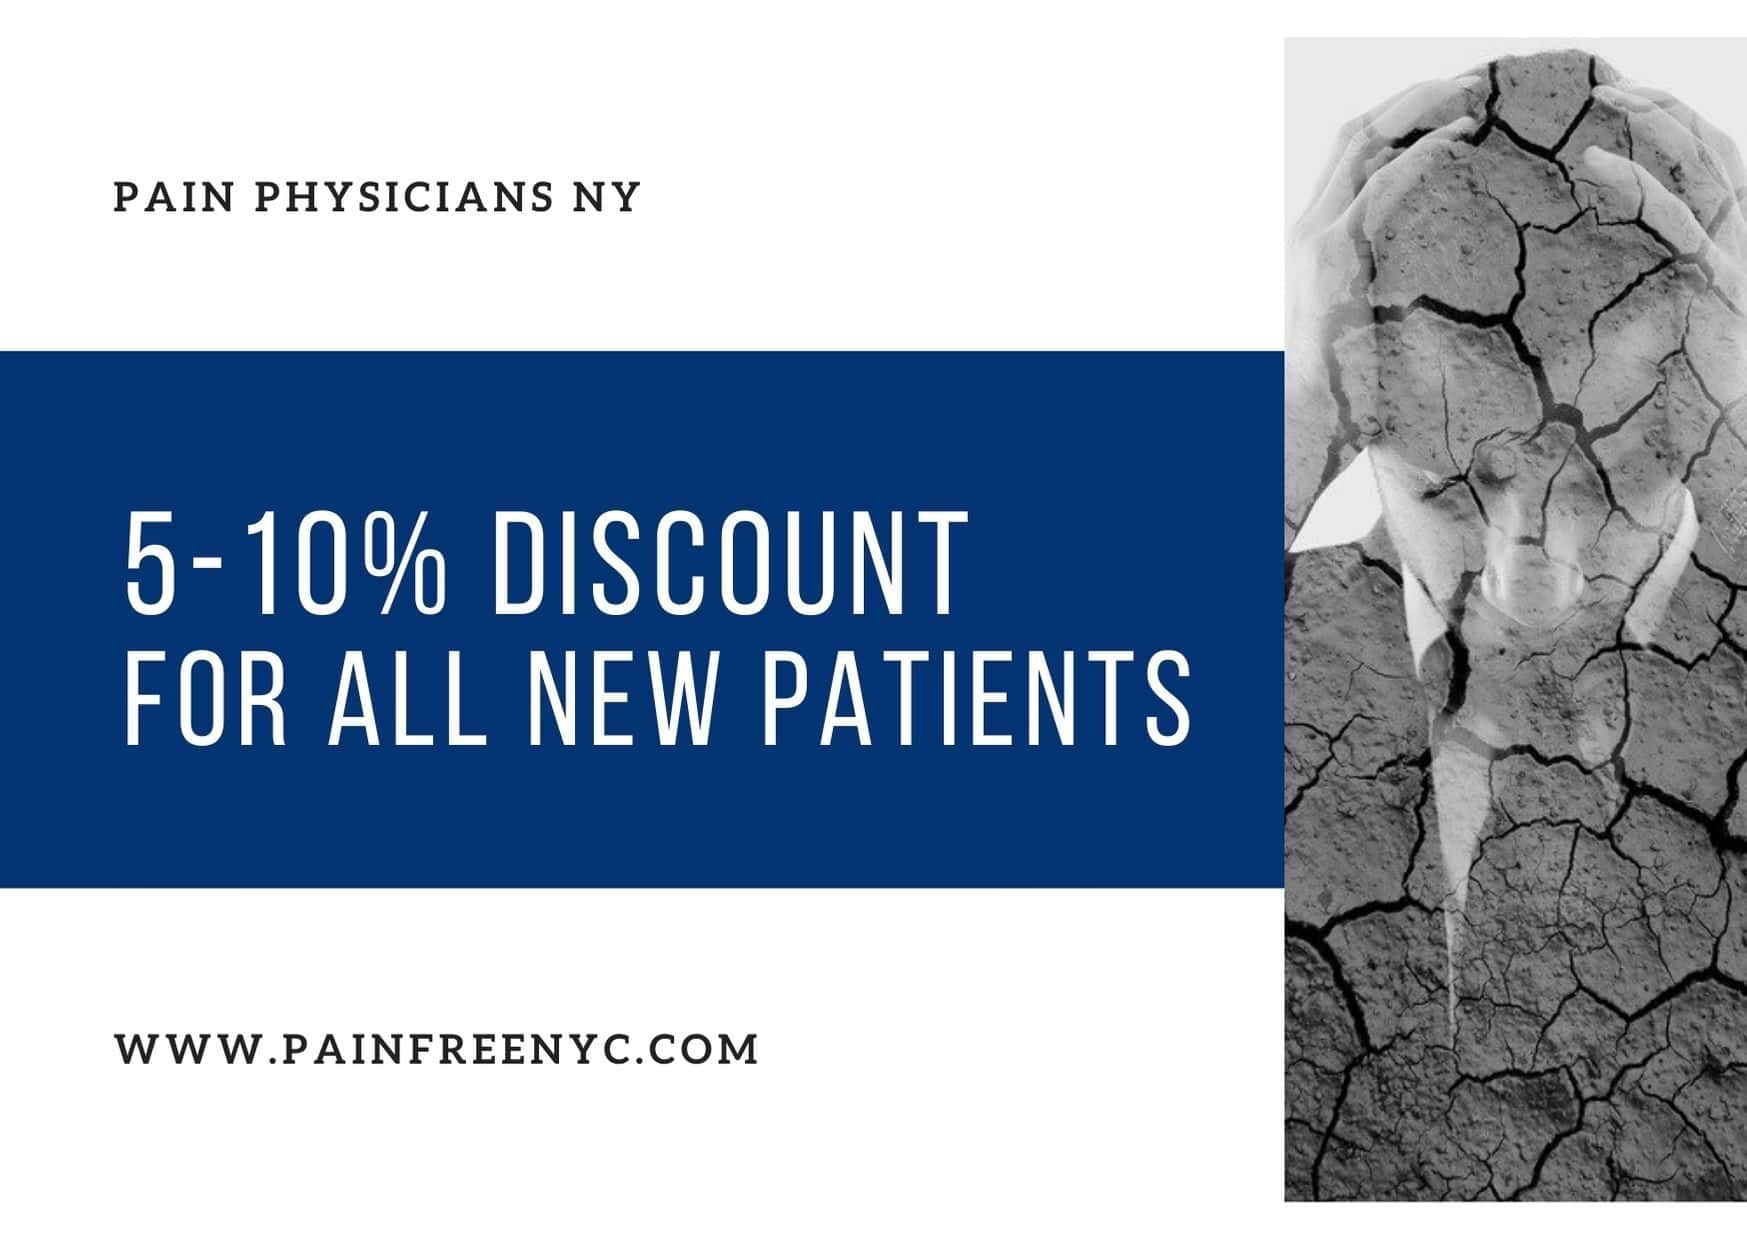 Pain Physicians NY - Brooklyn, NY, US, health